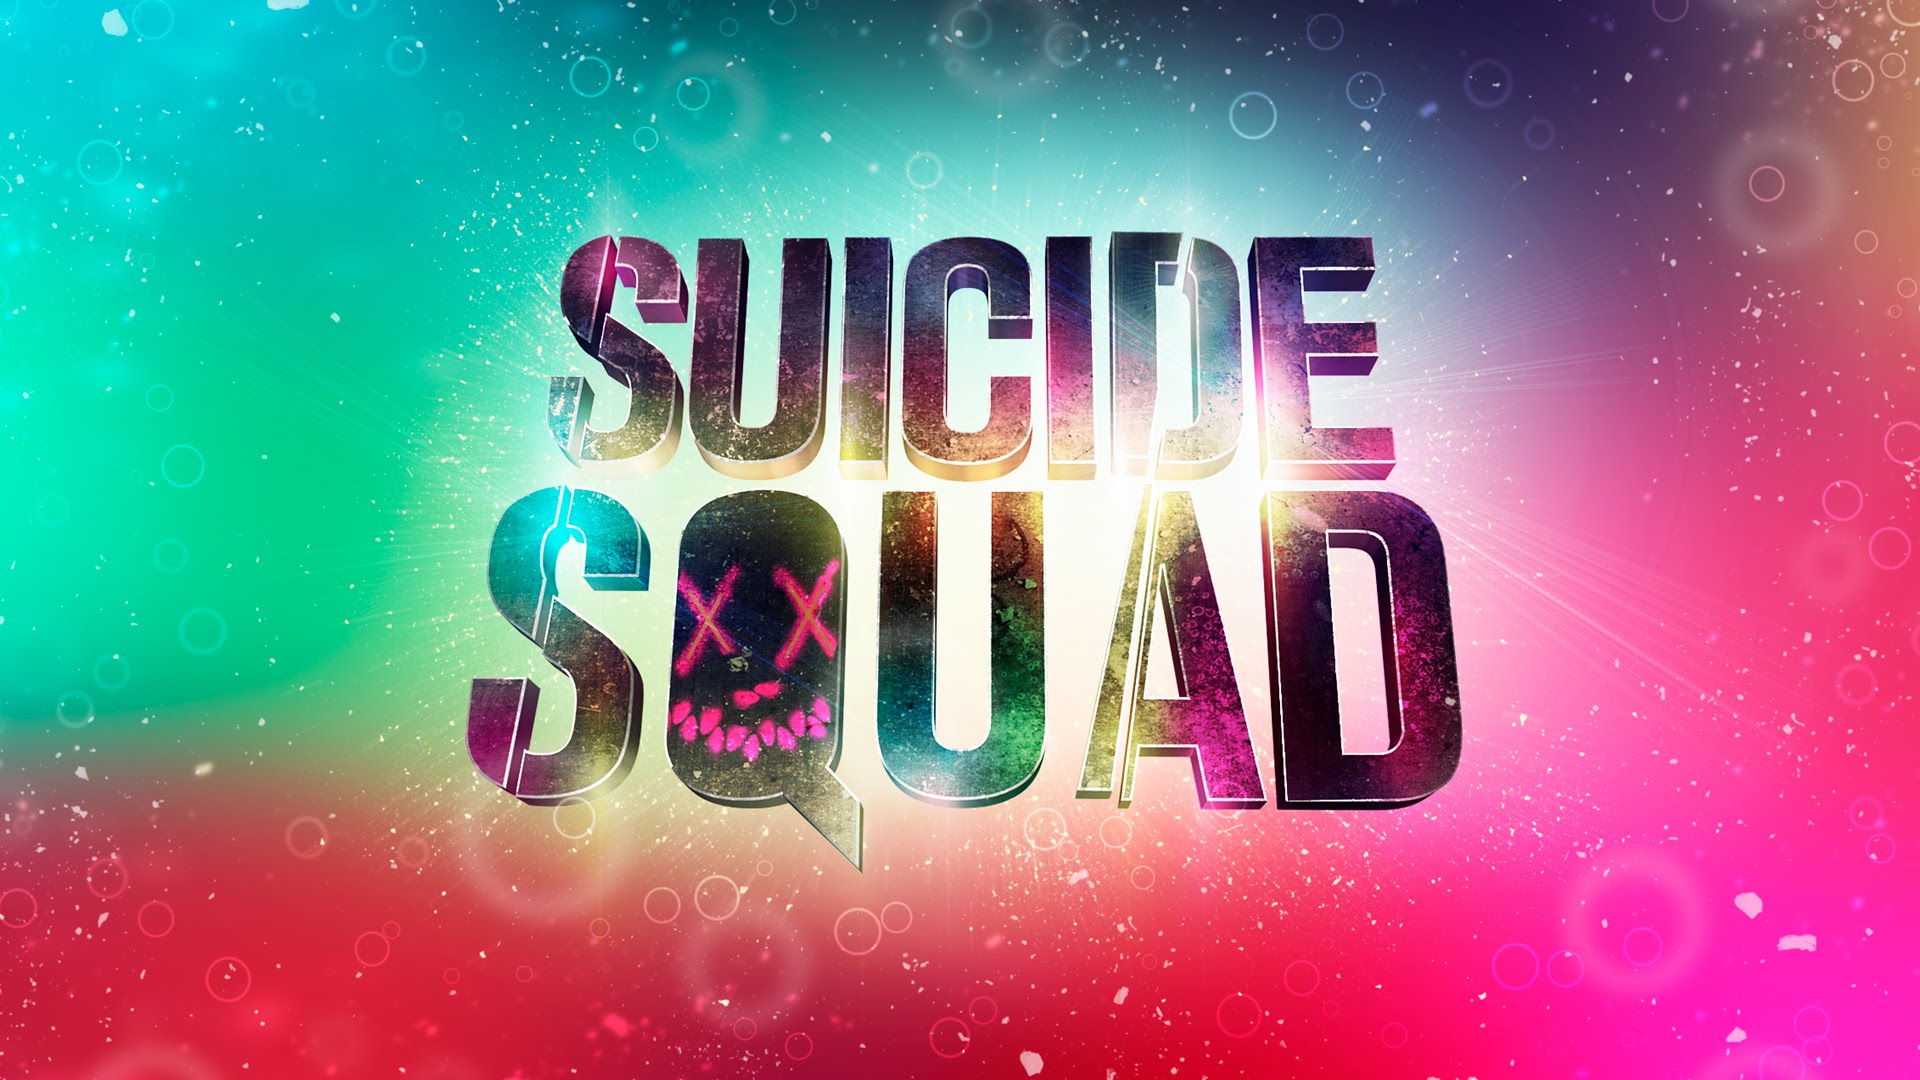 Suicide Squad 3D Text Effect - Photoshop CC - YouTube